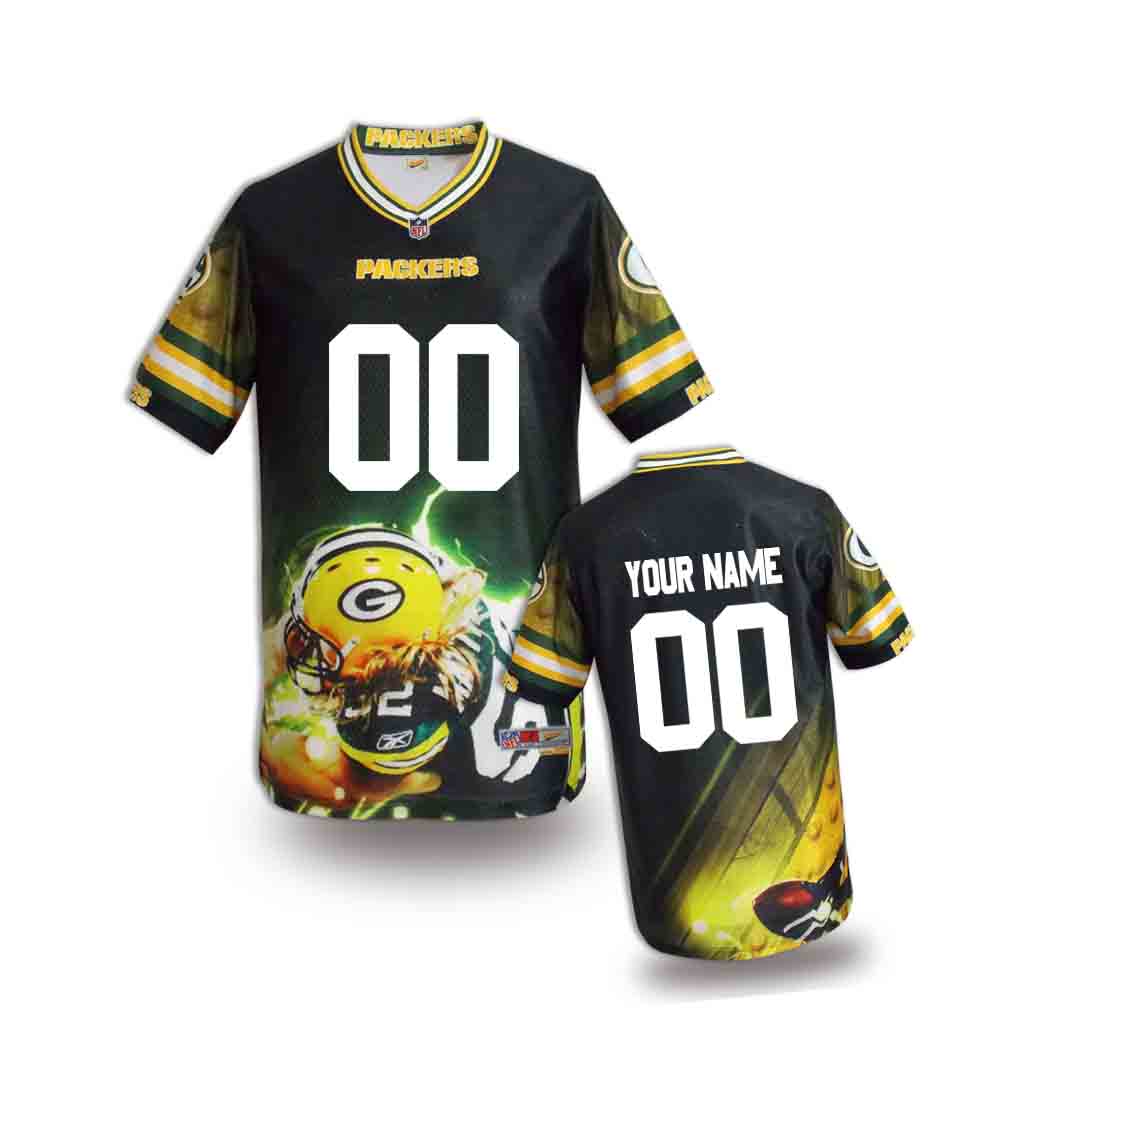 Nike Packers Customized Fashion Stitched Youth Jerseys05